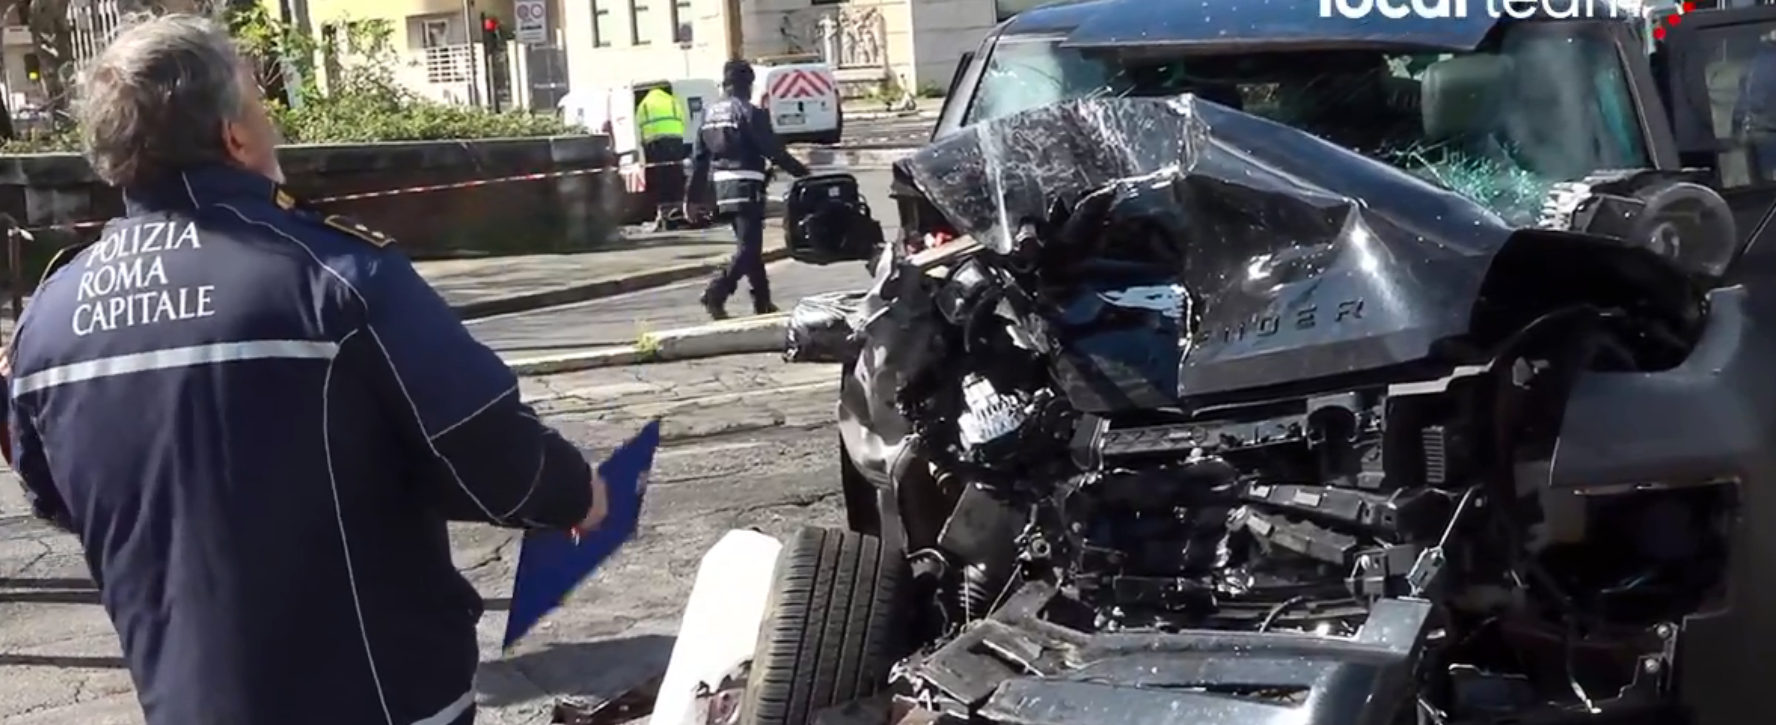 Care este starea lui Ciro Immobile, după accidentul rutier de duminică! Comunicatul celor de la Lazio